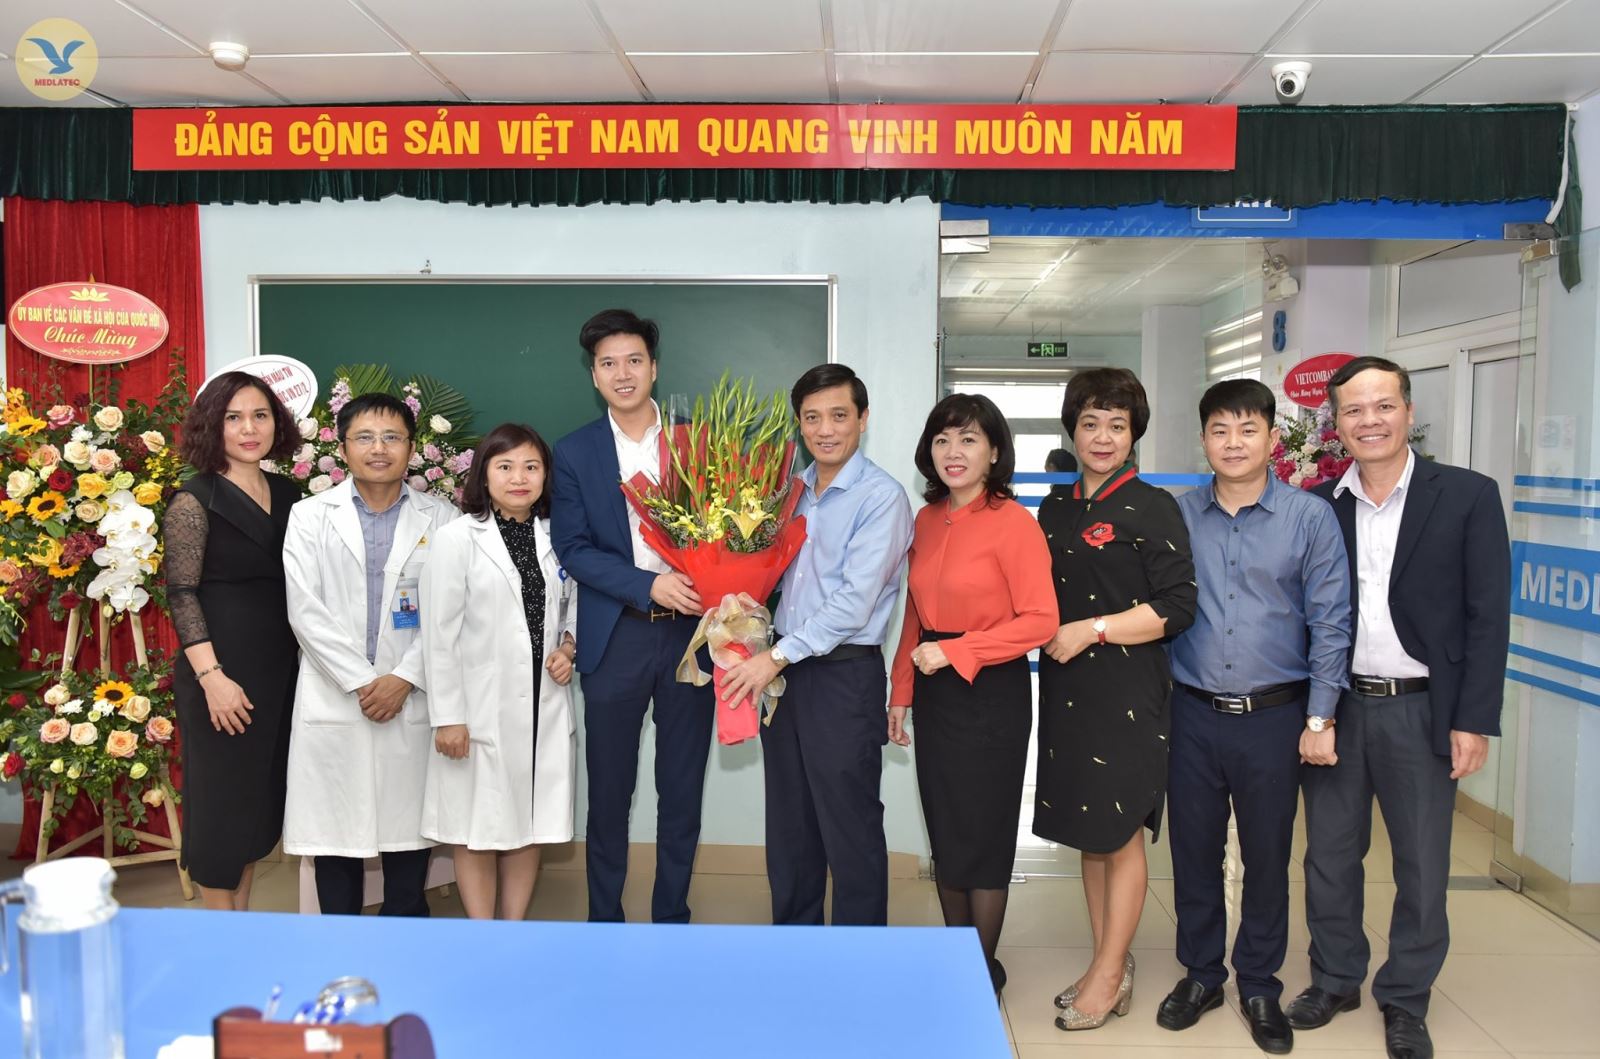 ThS. Nguyễn Trí Anh - Tổng GIám đốc MED GROUP (thứ 4 từ trái qua phải) nhận bó hoa tươi thắm chúc mừng Ngày 27-2 của đại diện Quận ủy Ba Đình.